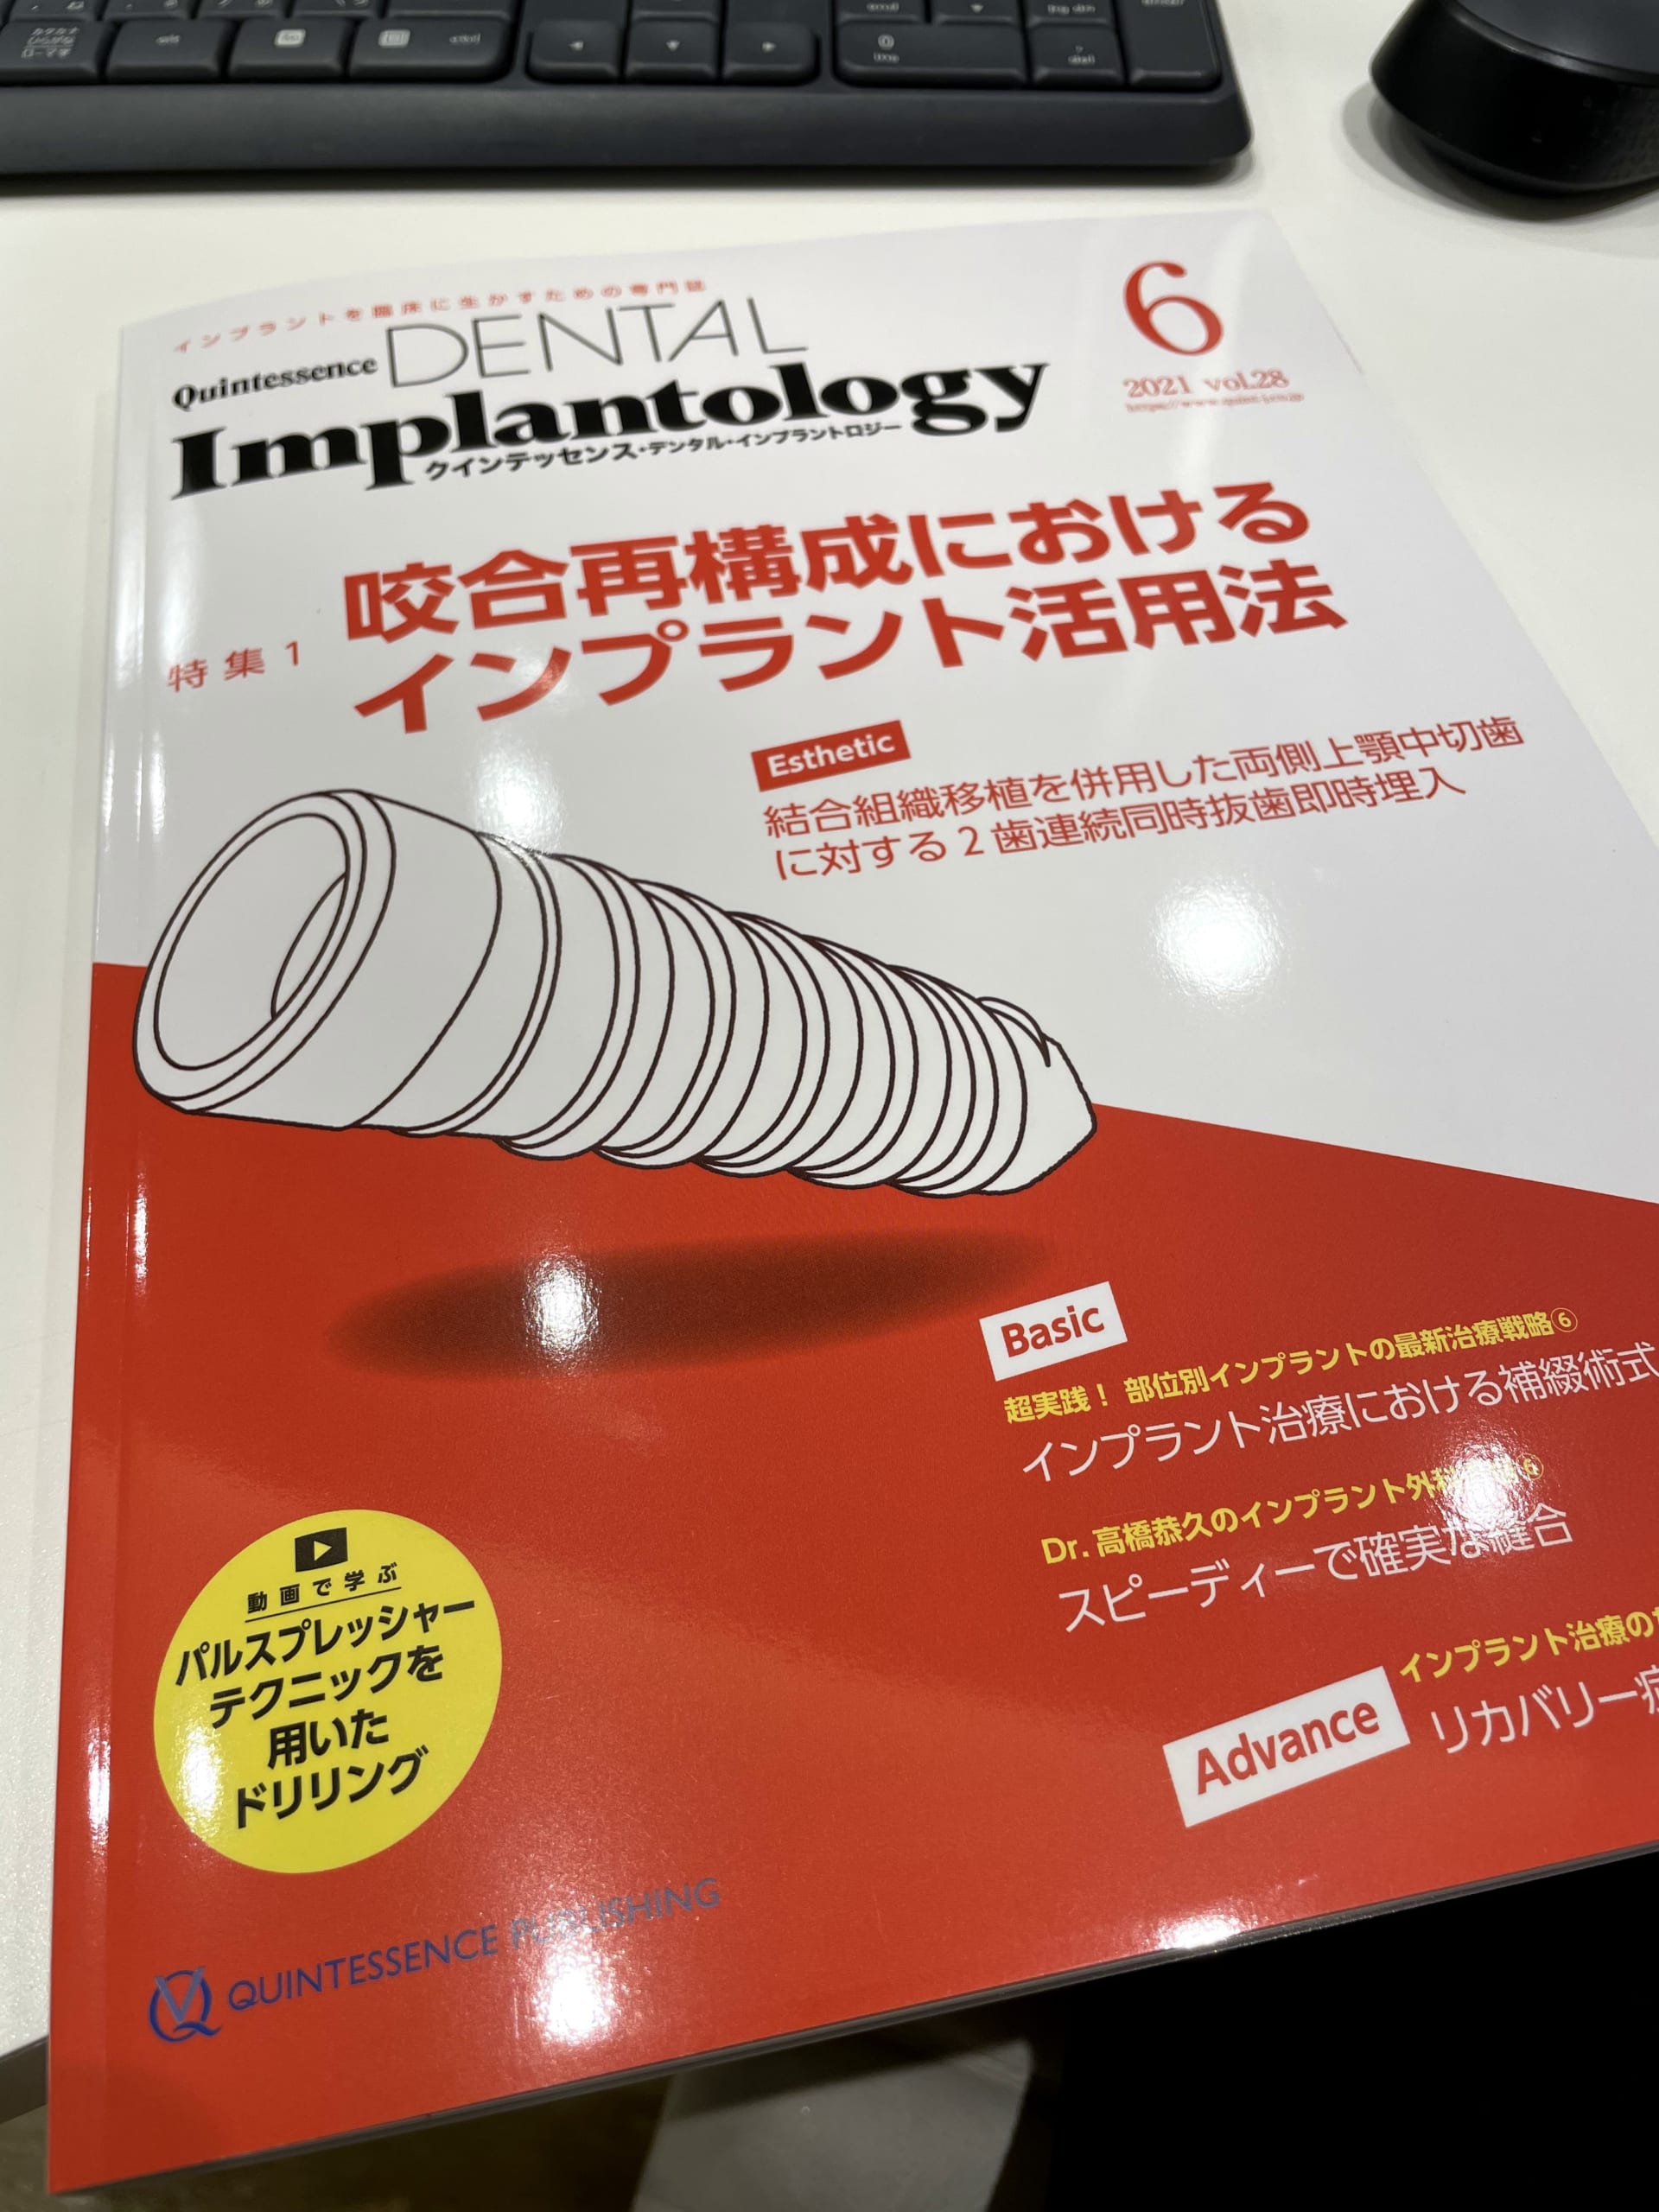 歯科雑誌「Quintessence DENTAL Implantlogy」での連載が終了！ - 丸尾 